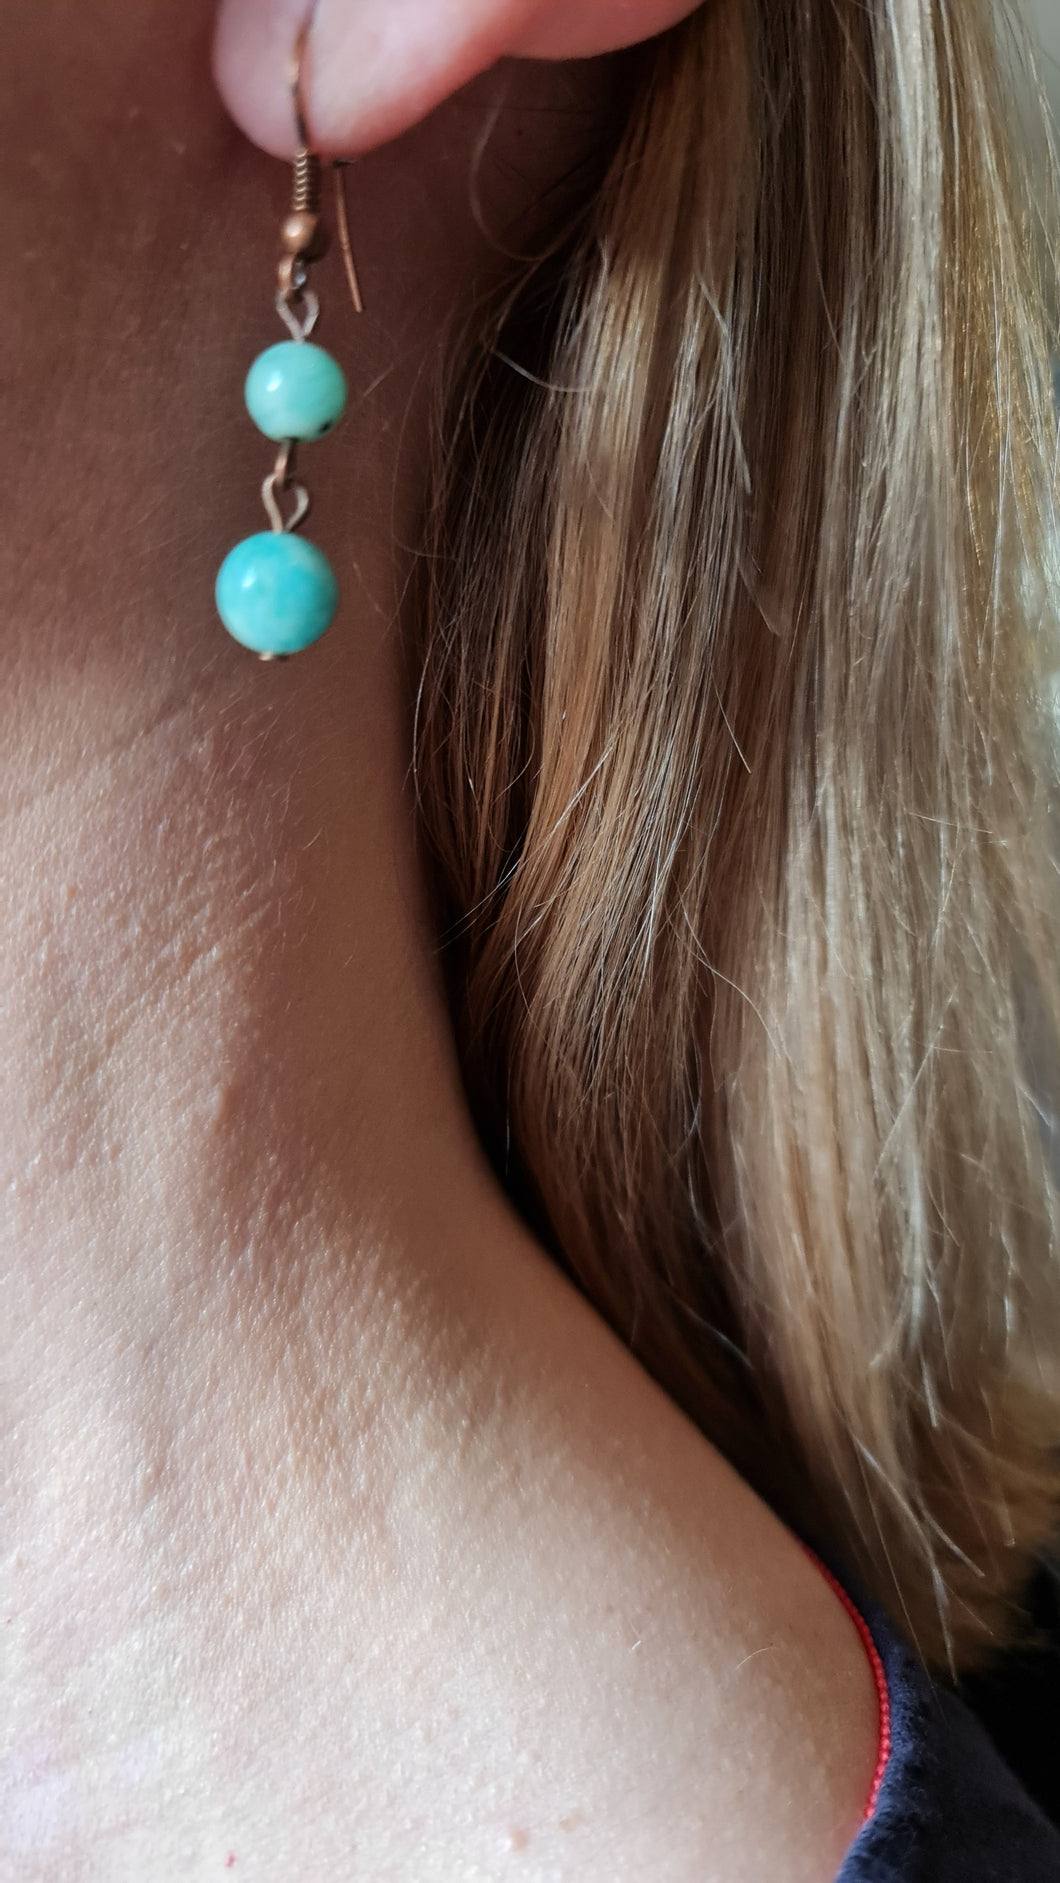 Sweetpea Aquamarine earrings